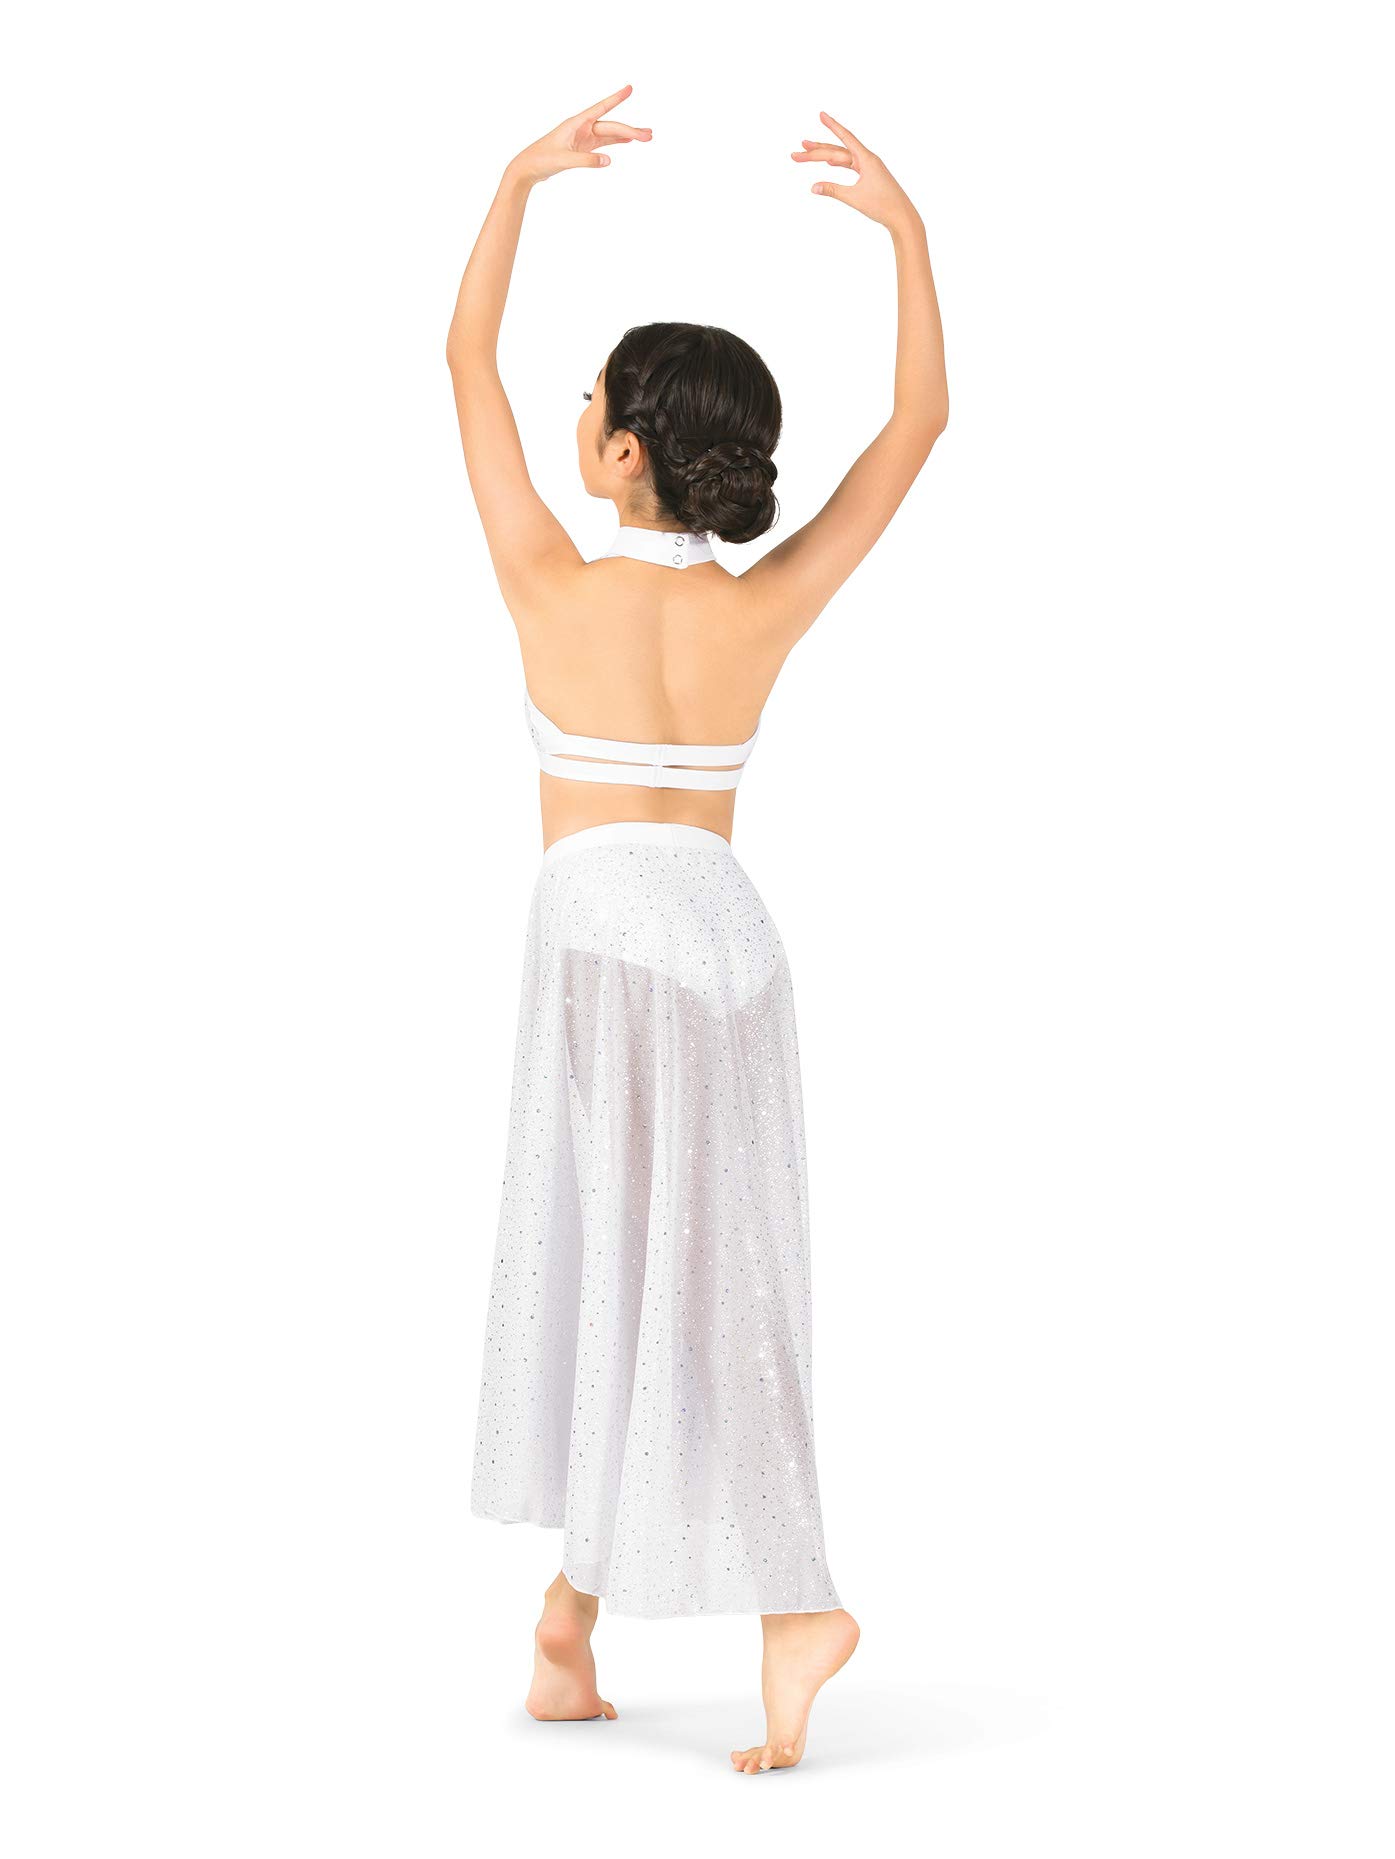 Body Wrappers Girls Performance Sheer Twinkle Mesh Halter Bra Top,TW300NUDM,Nude,Medium